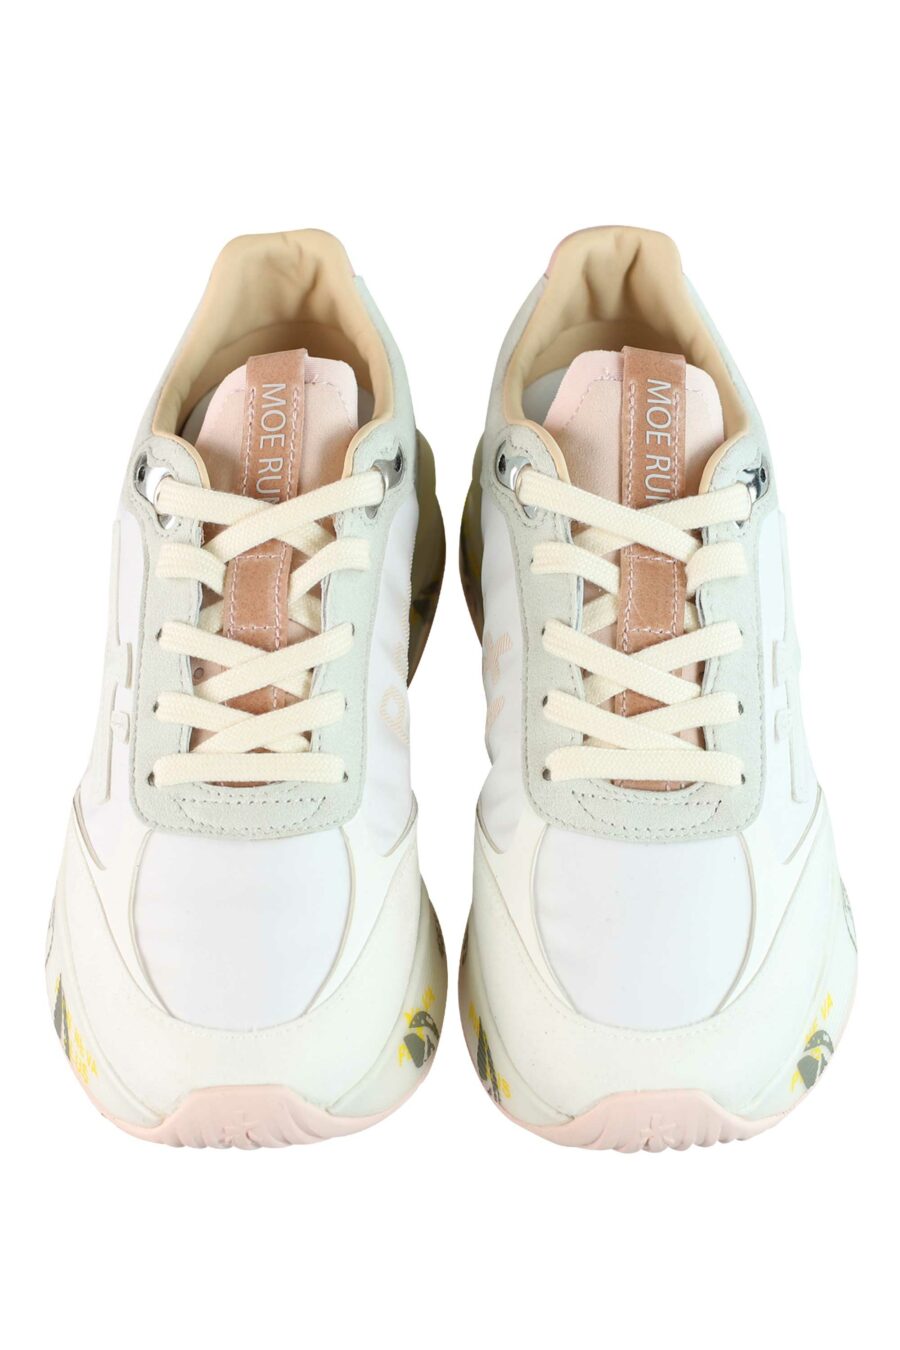 Zapatillas blancas con rosa y gris "moe run-d 6338" - 8058326253473 5